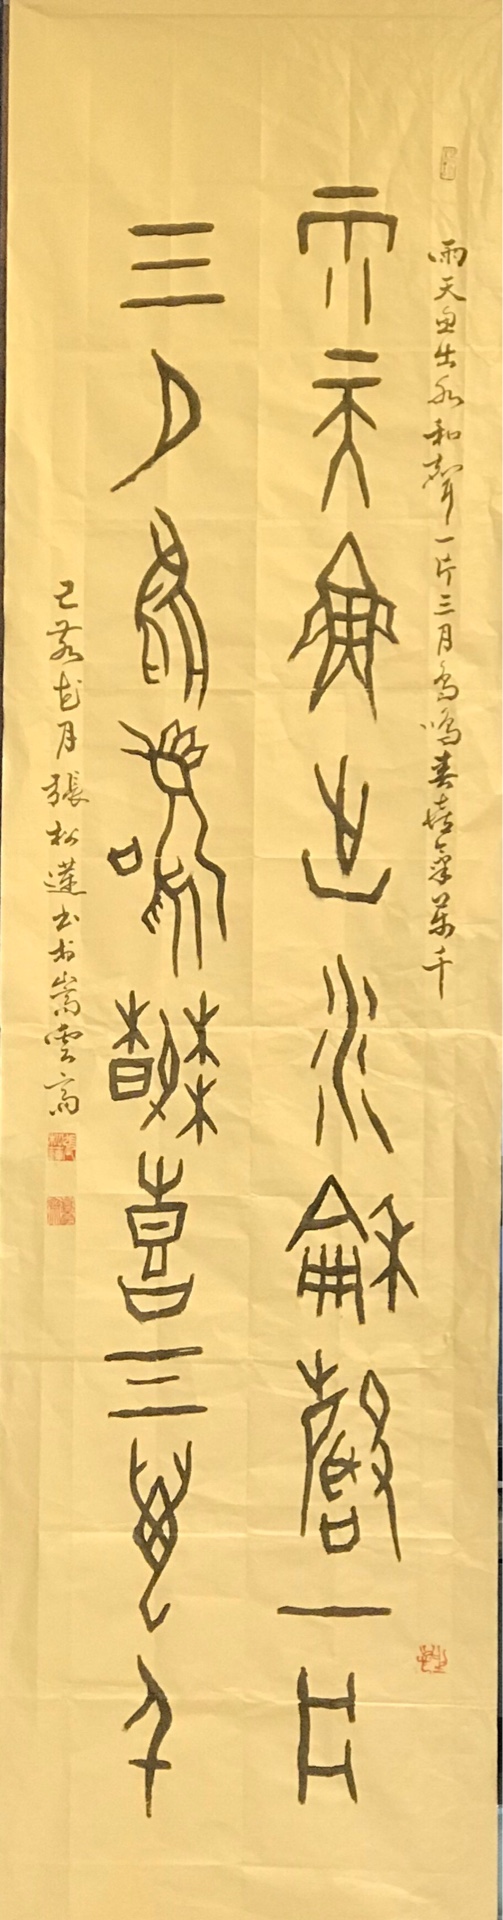 中國文字博物館將於5月底舉辦紀念甲骨文發現120週年「2019•甲骨文書法國際大展」